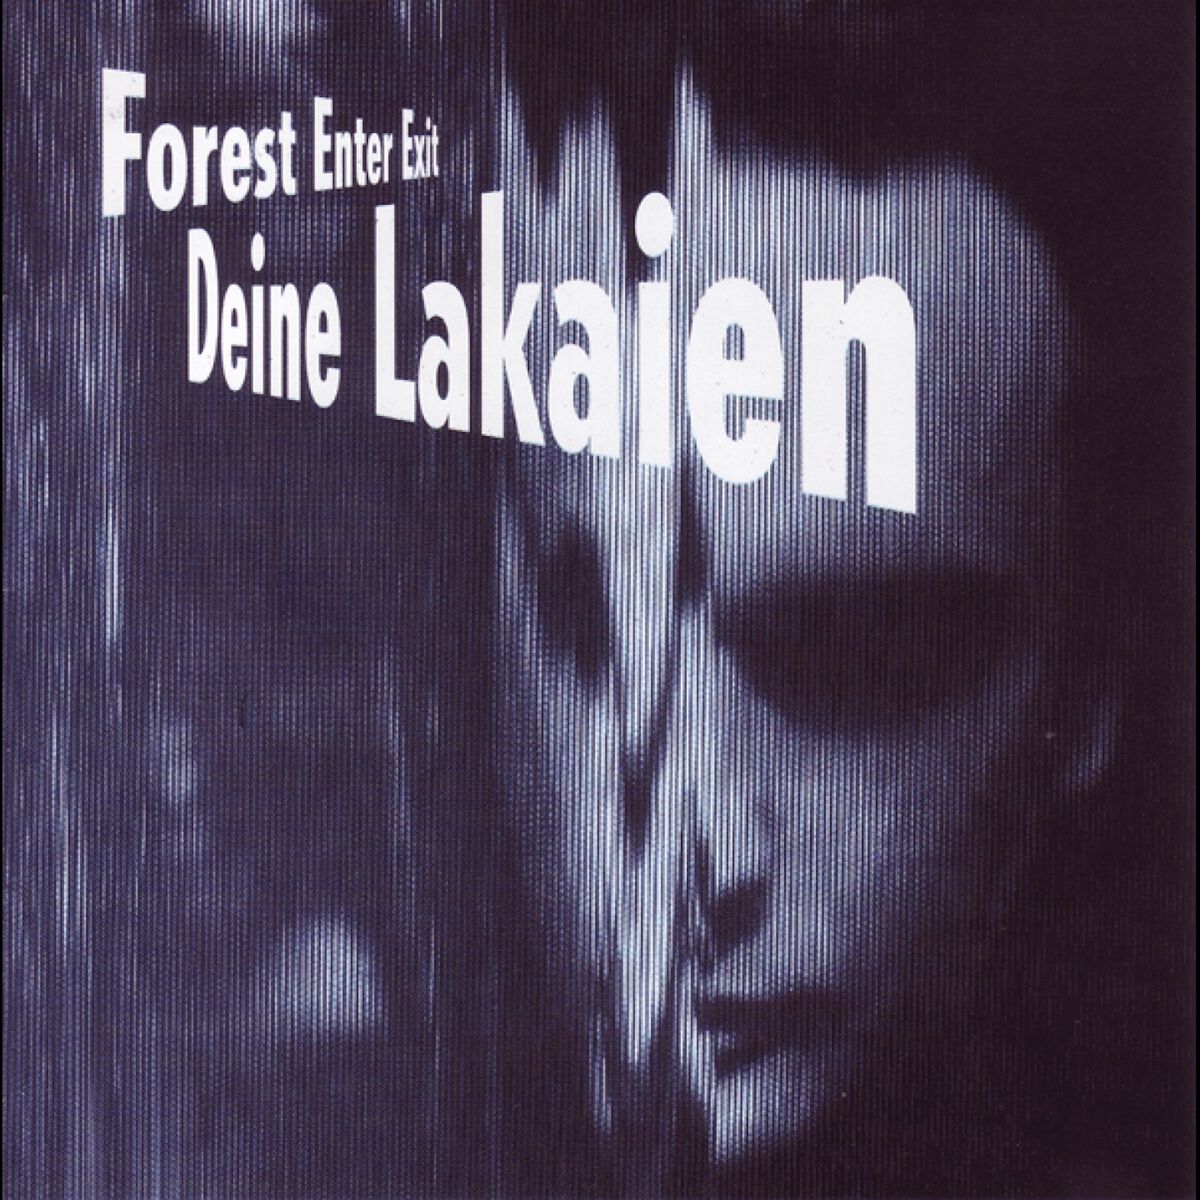 Forest enter exit & Mindmachine von Deine Lakaien - 2-LP (Coloured, Gatefold, Limited Edition)